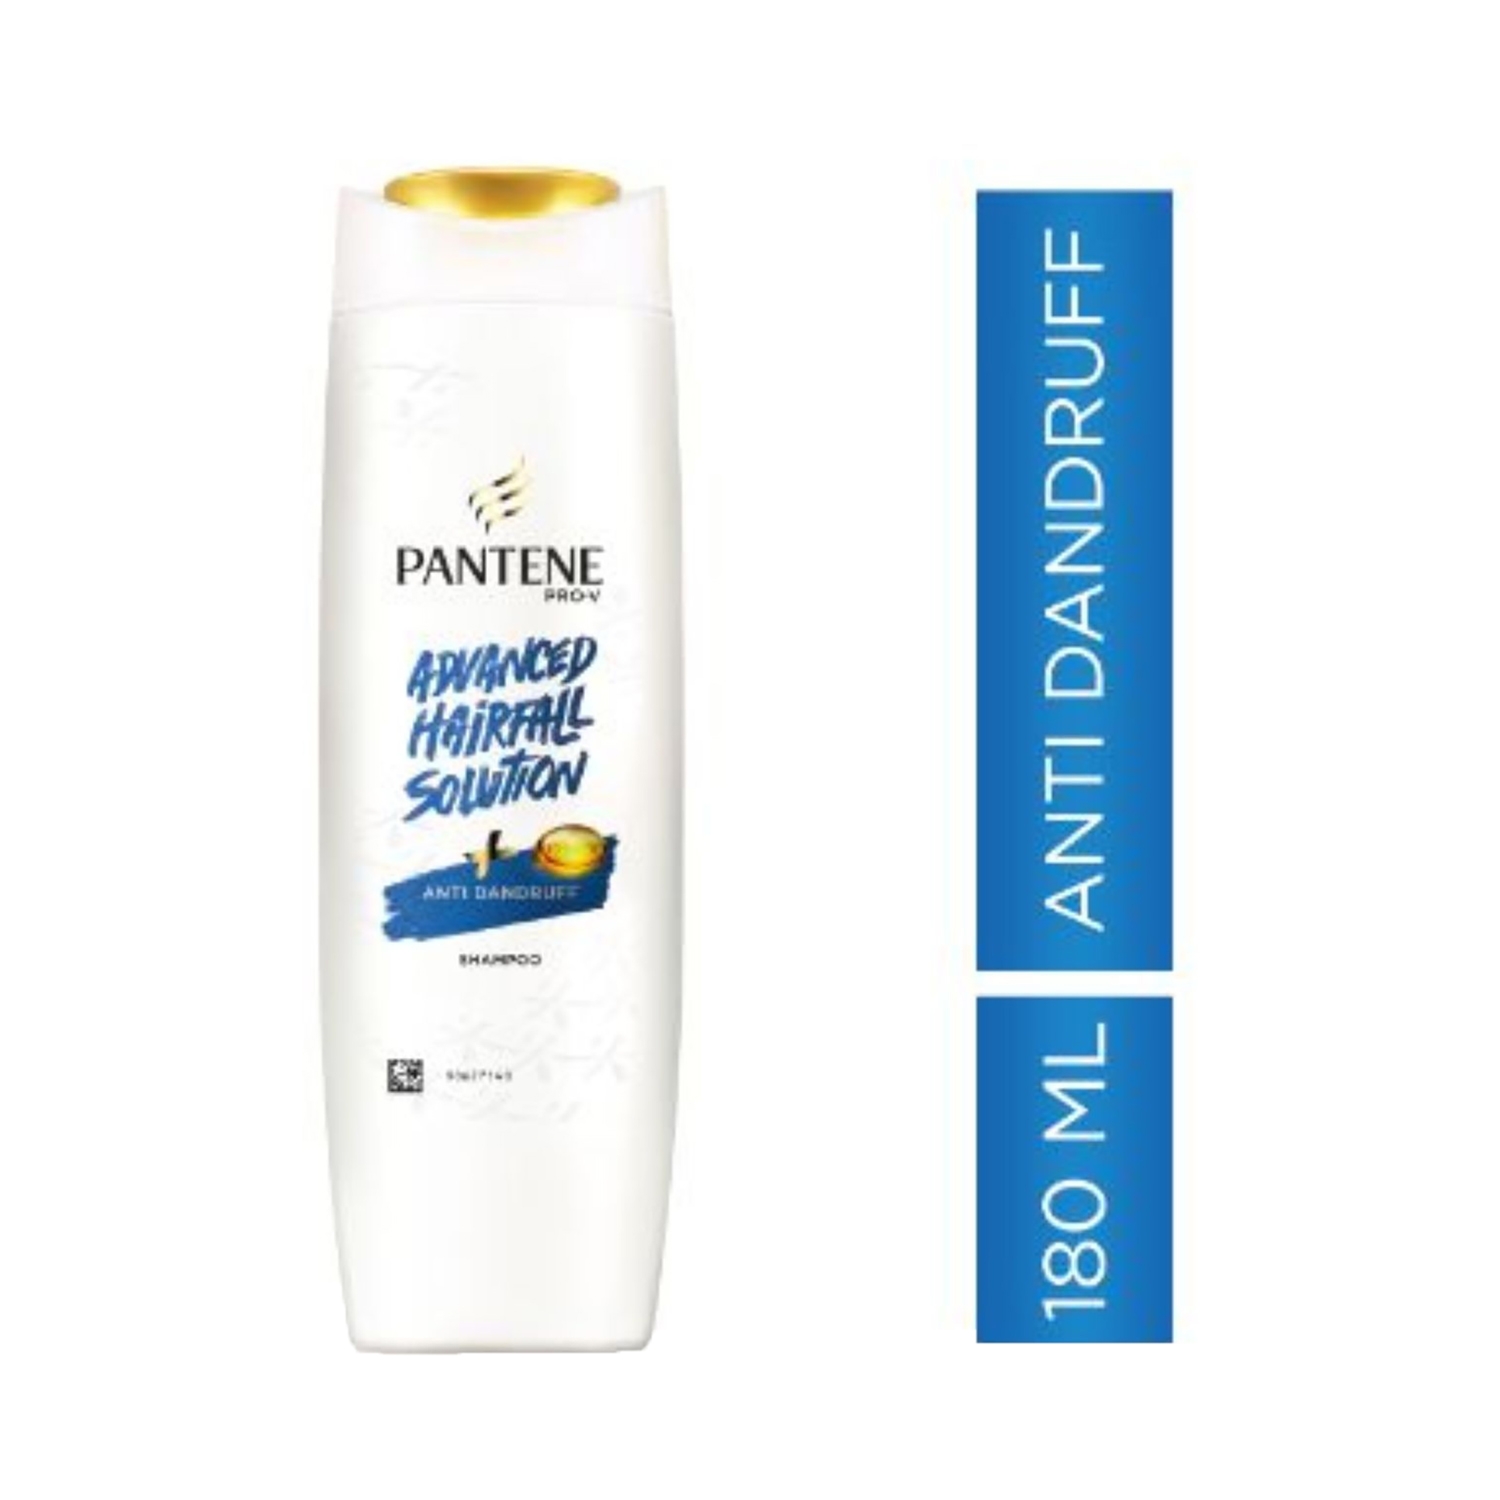 Pantene | Pantene Advanced Hairfall Solution Anti-Dandruff Shampoo (180ml)